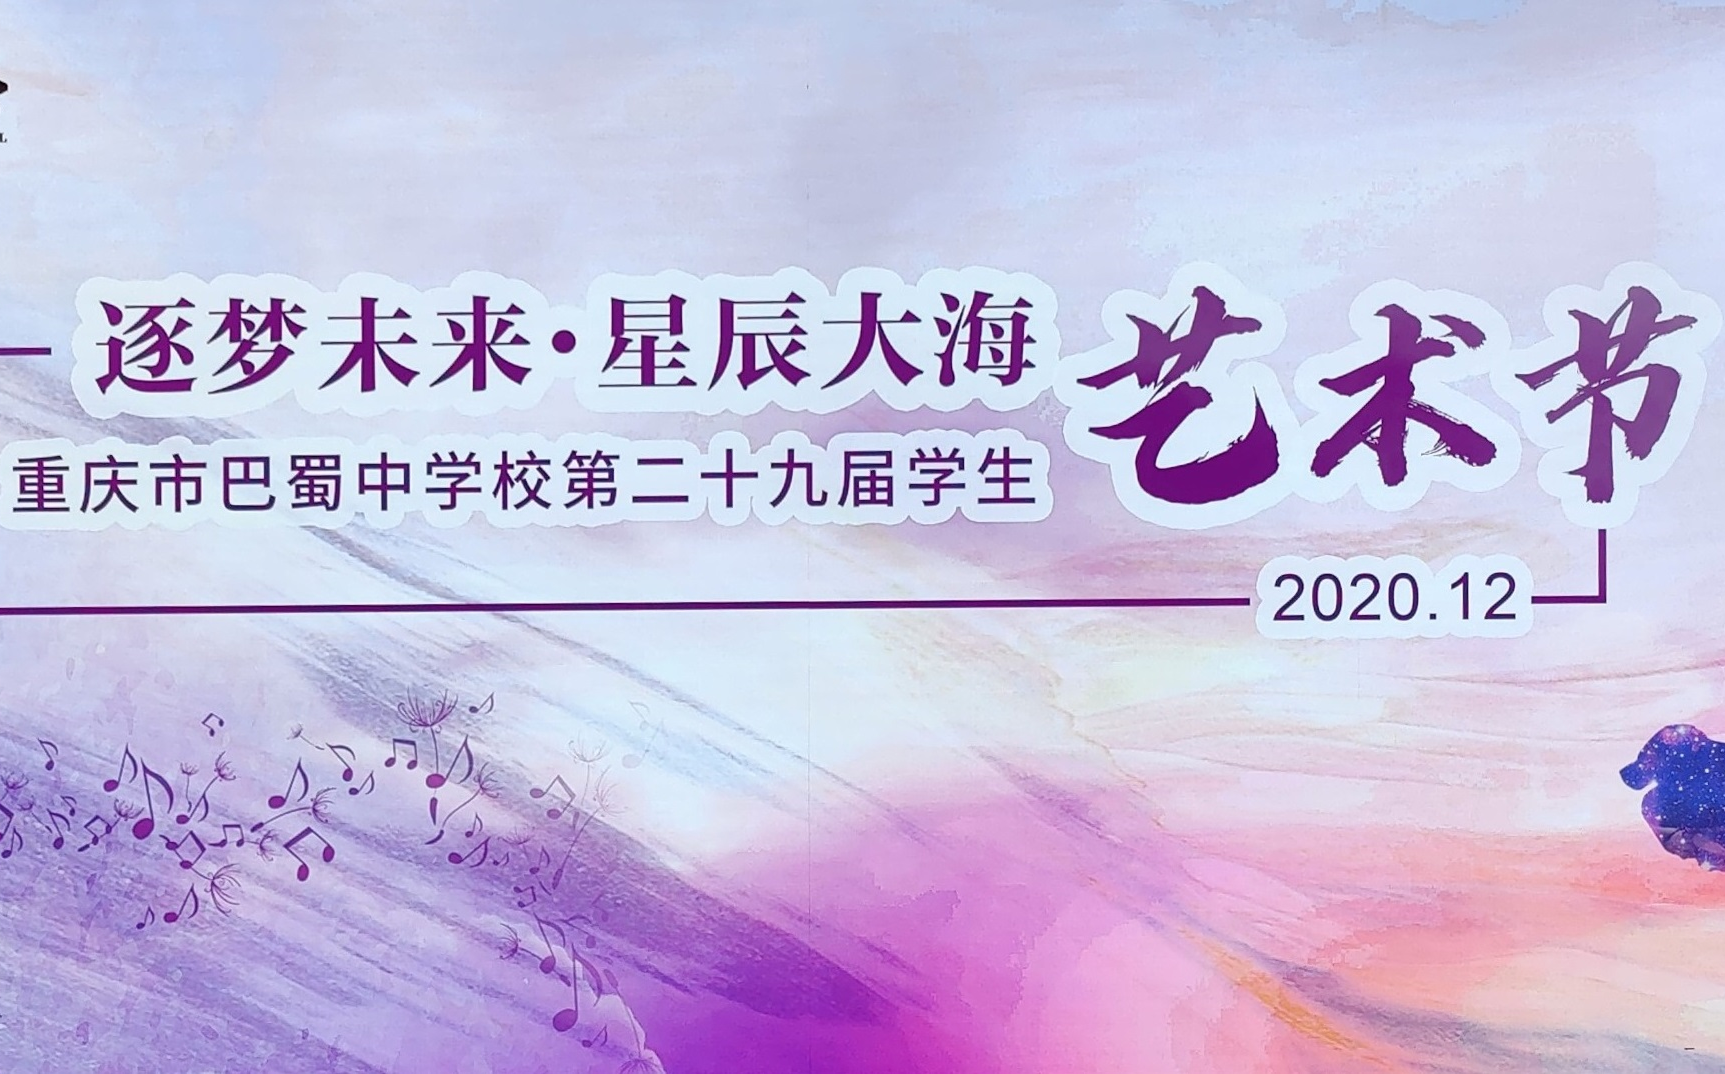 2020 巴蜀中学艺术节 舞出我青春 专场集锦